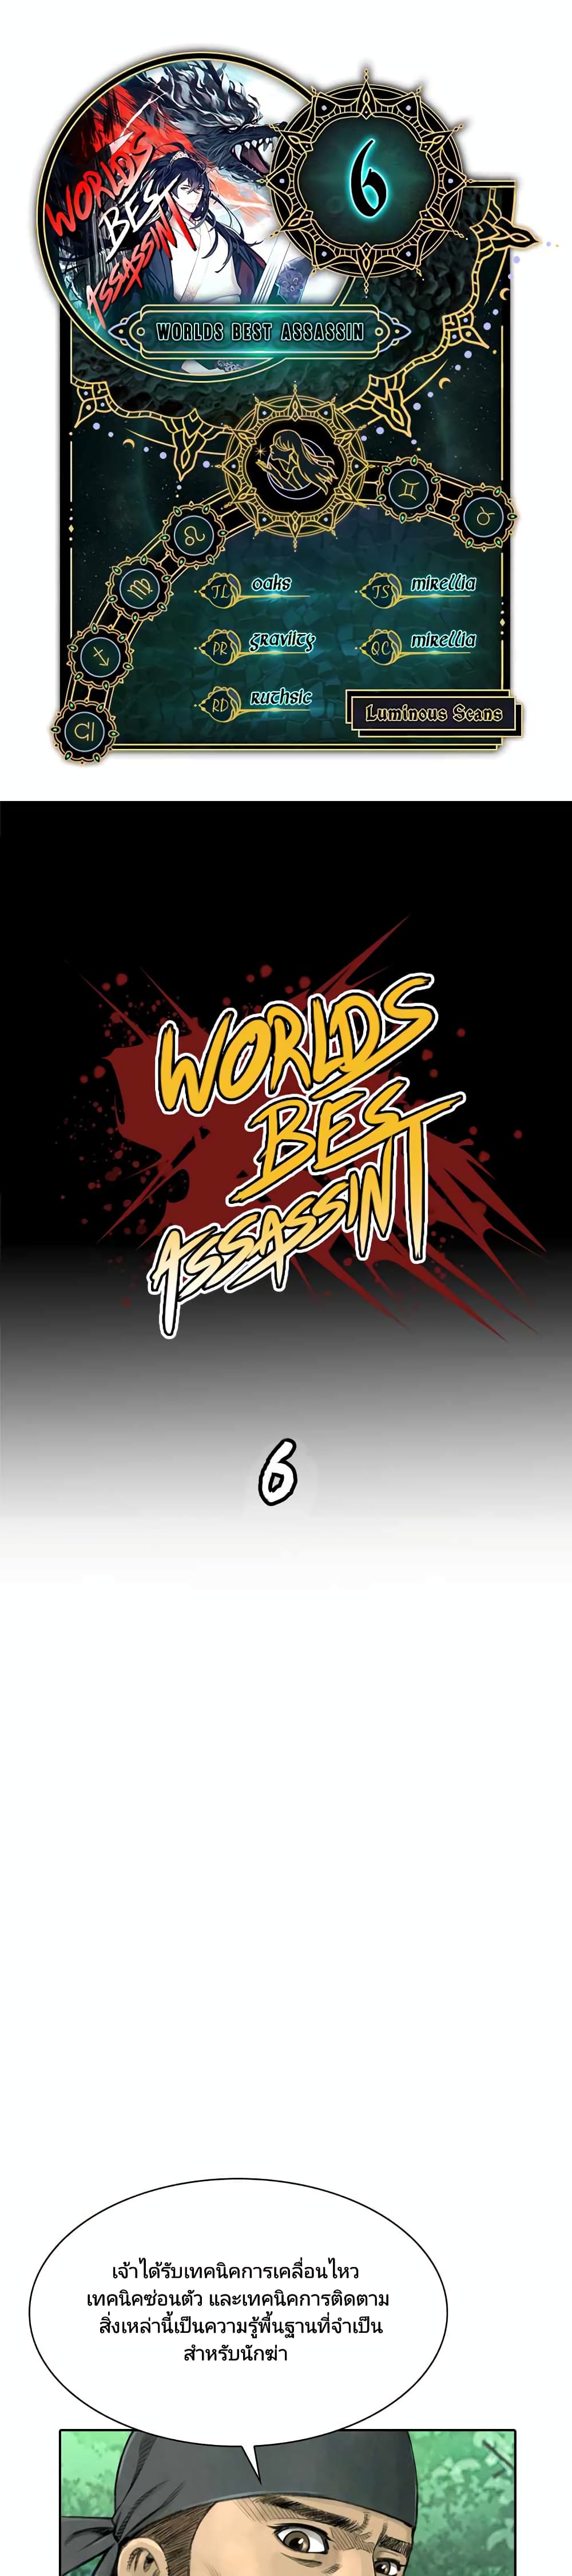 Worlds Best Assassin6 02